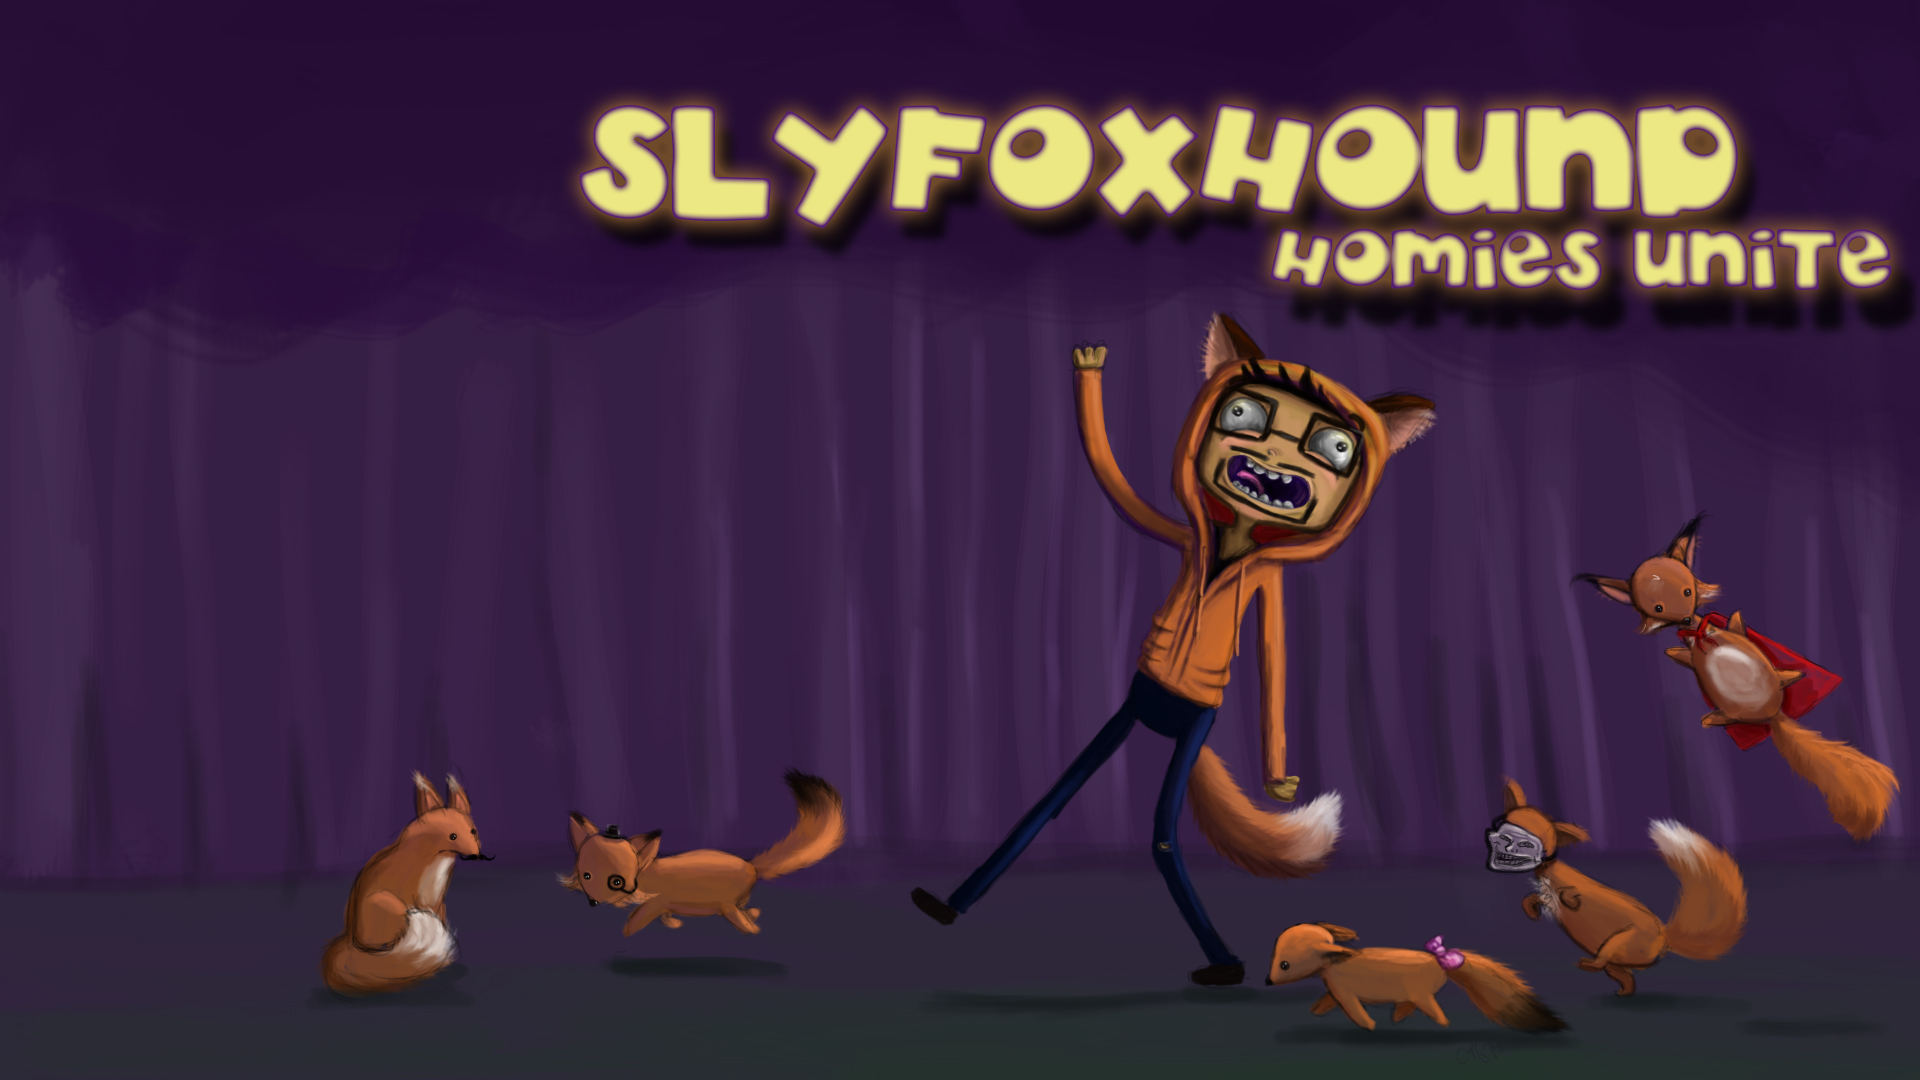 ihascupquakecom  Slyfoxhound Homies Unite Wallpaper Speed Art